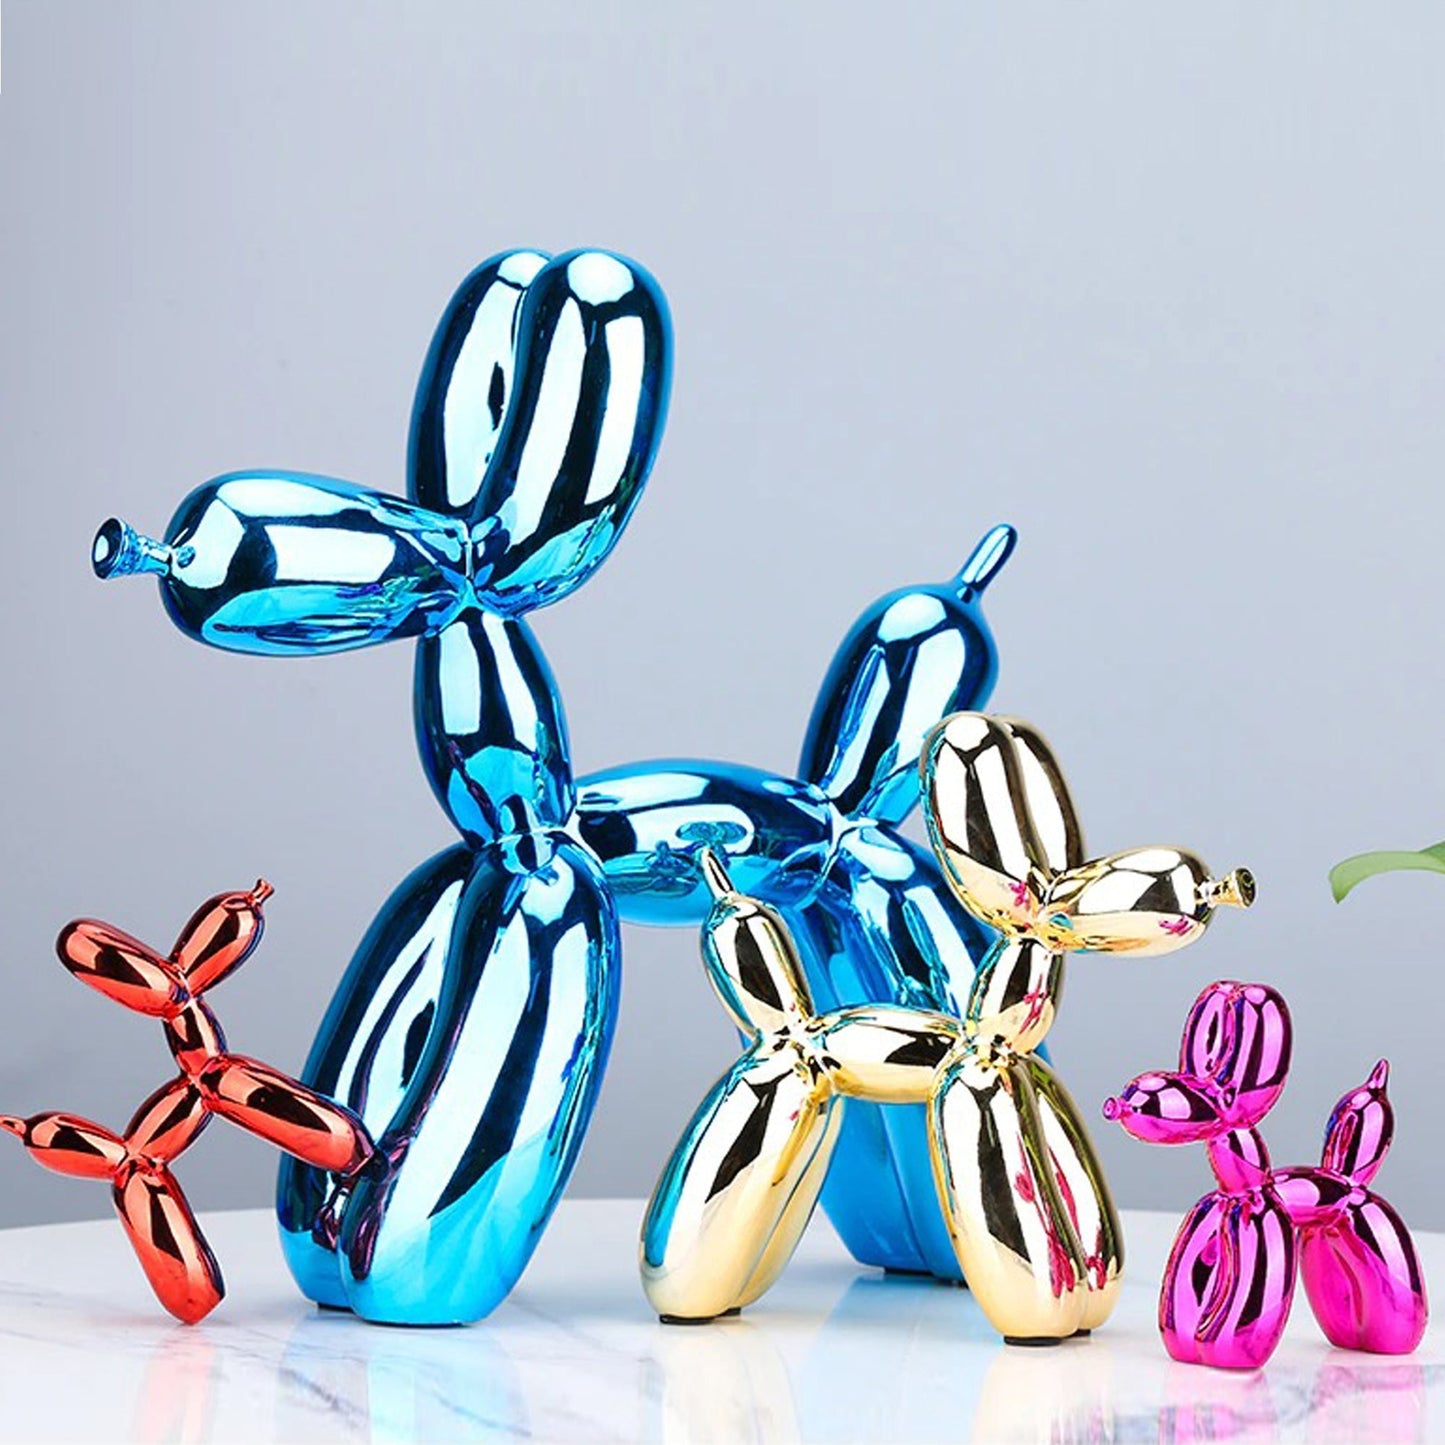 Electroplated Balloon Dog Sculptures 2 väriä